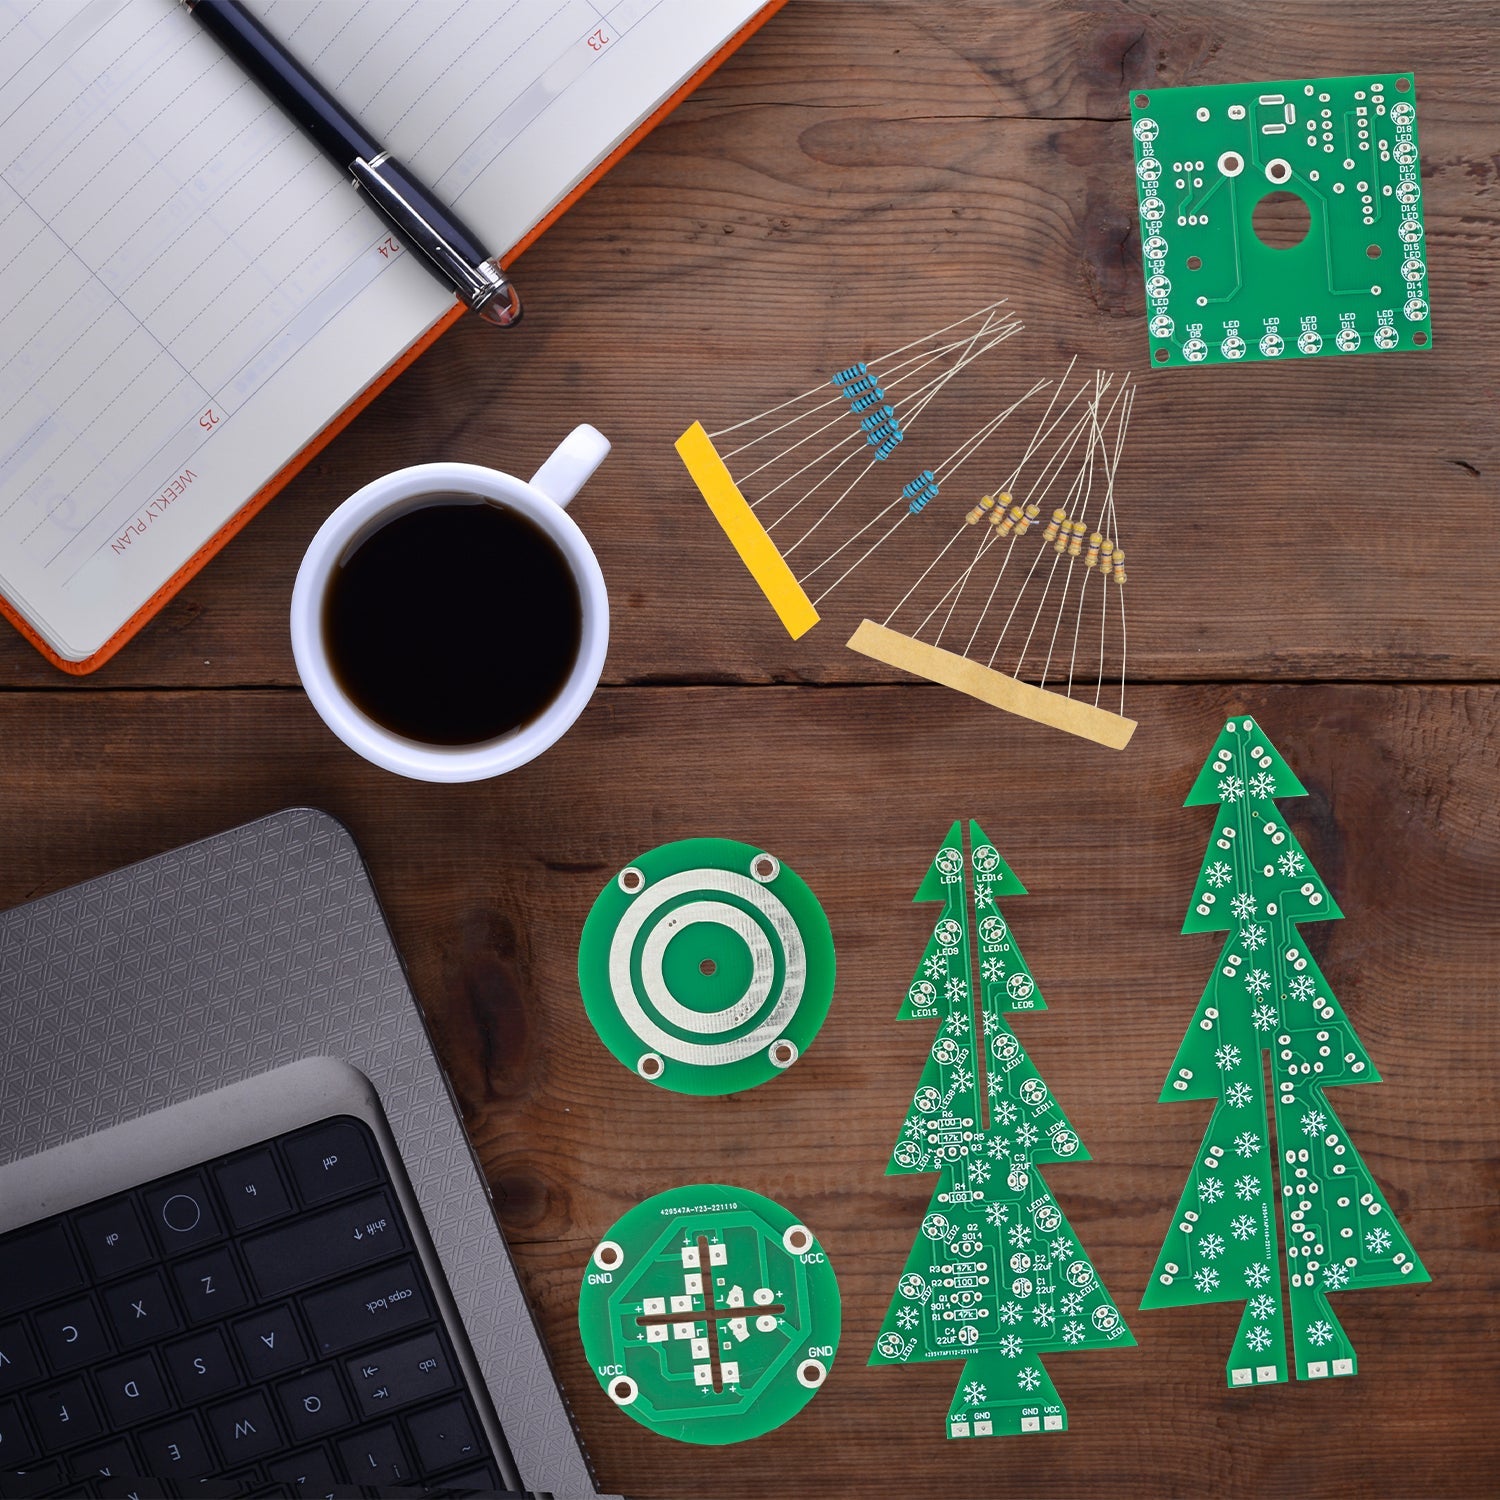 DIY LED Weihnachtsbaum Kit: Weihnachtsbaum Elektronik Bausatz zum Löten - Lötbausatz für einen drehenden Weihnachtsbaum mit LEDs und USB-Anschluss - AZ-Delivery